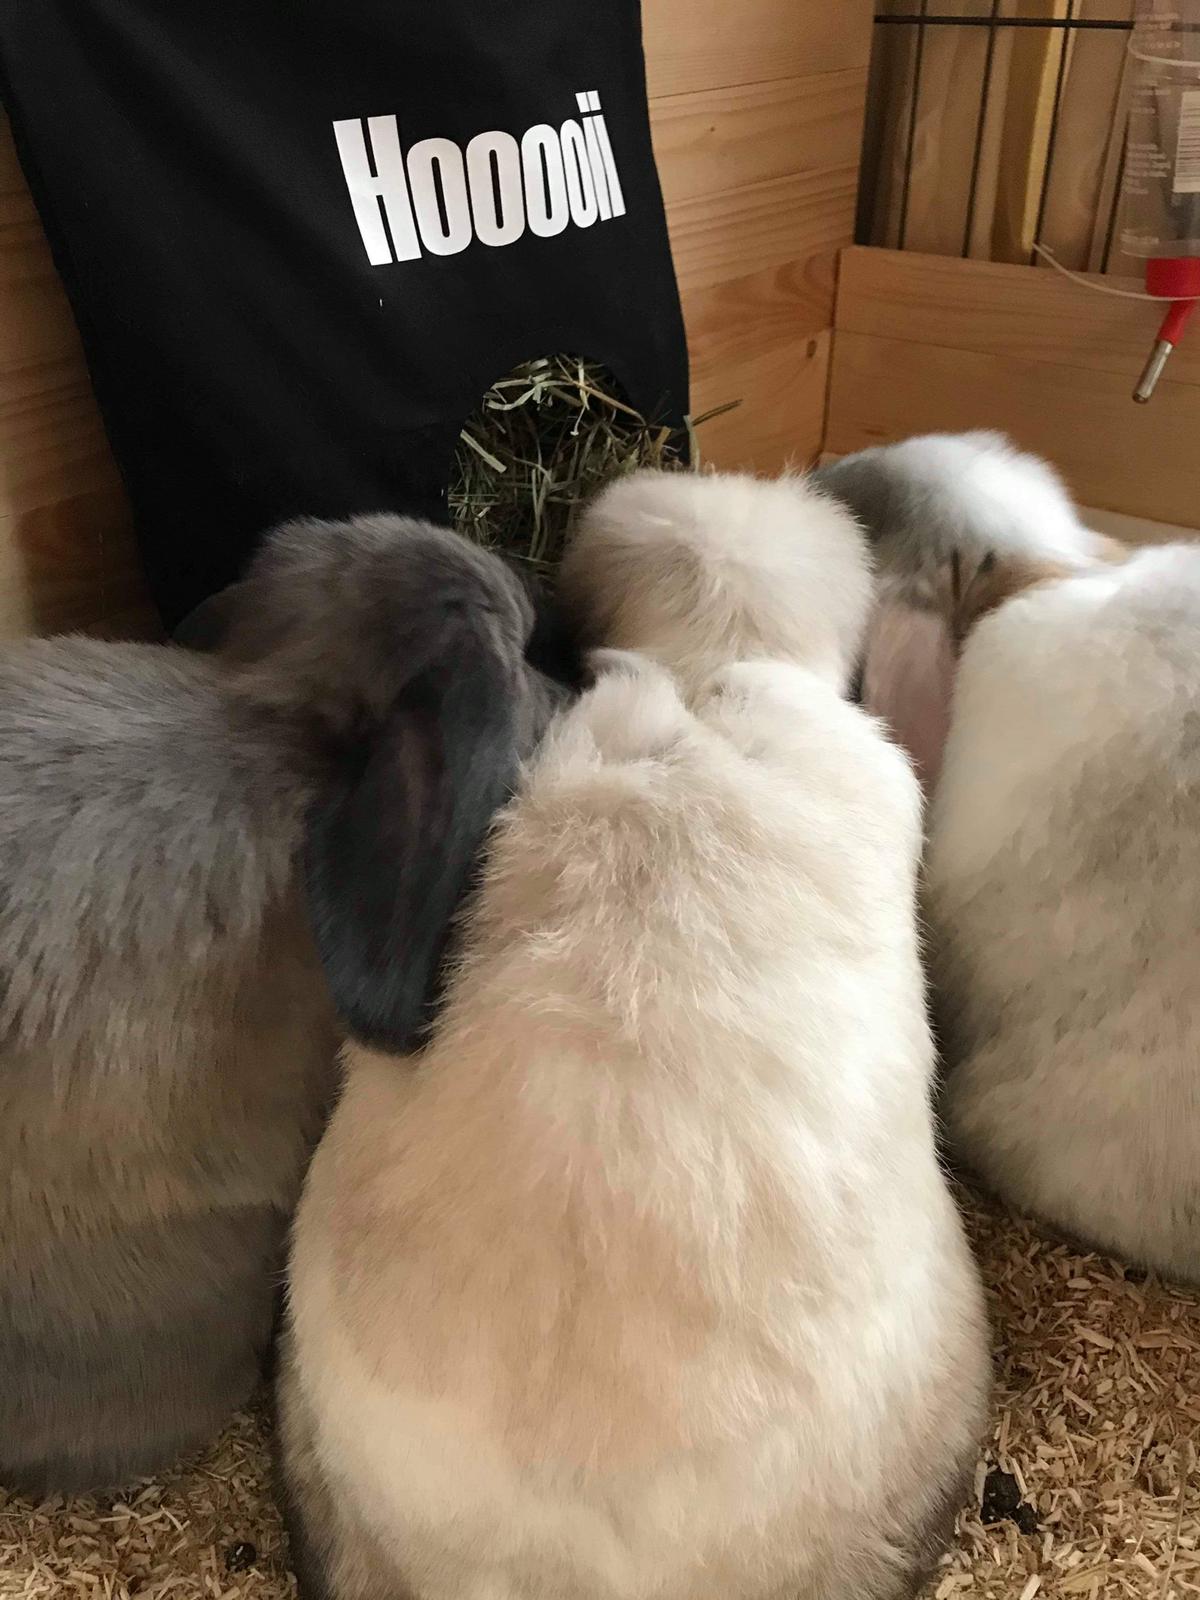 Hooooii - met 3 konijntjes